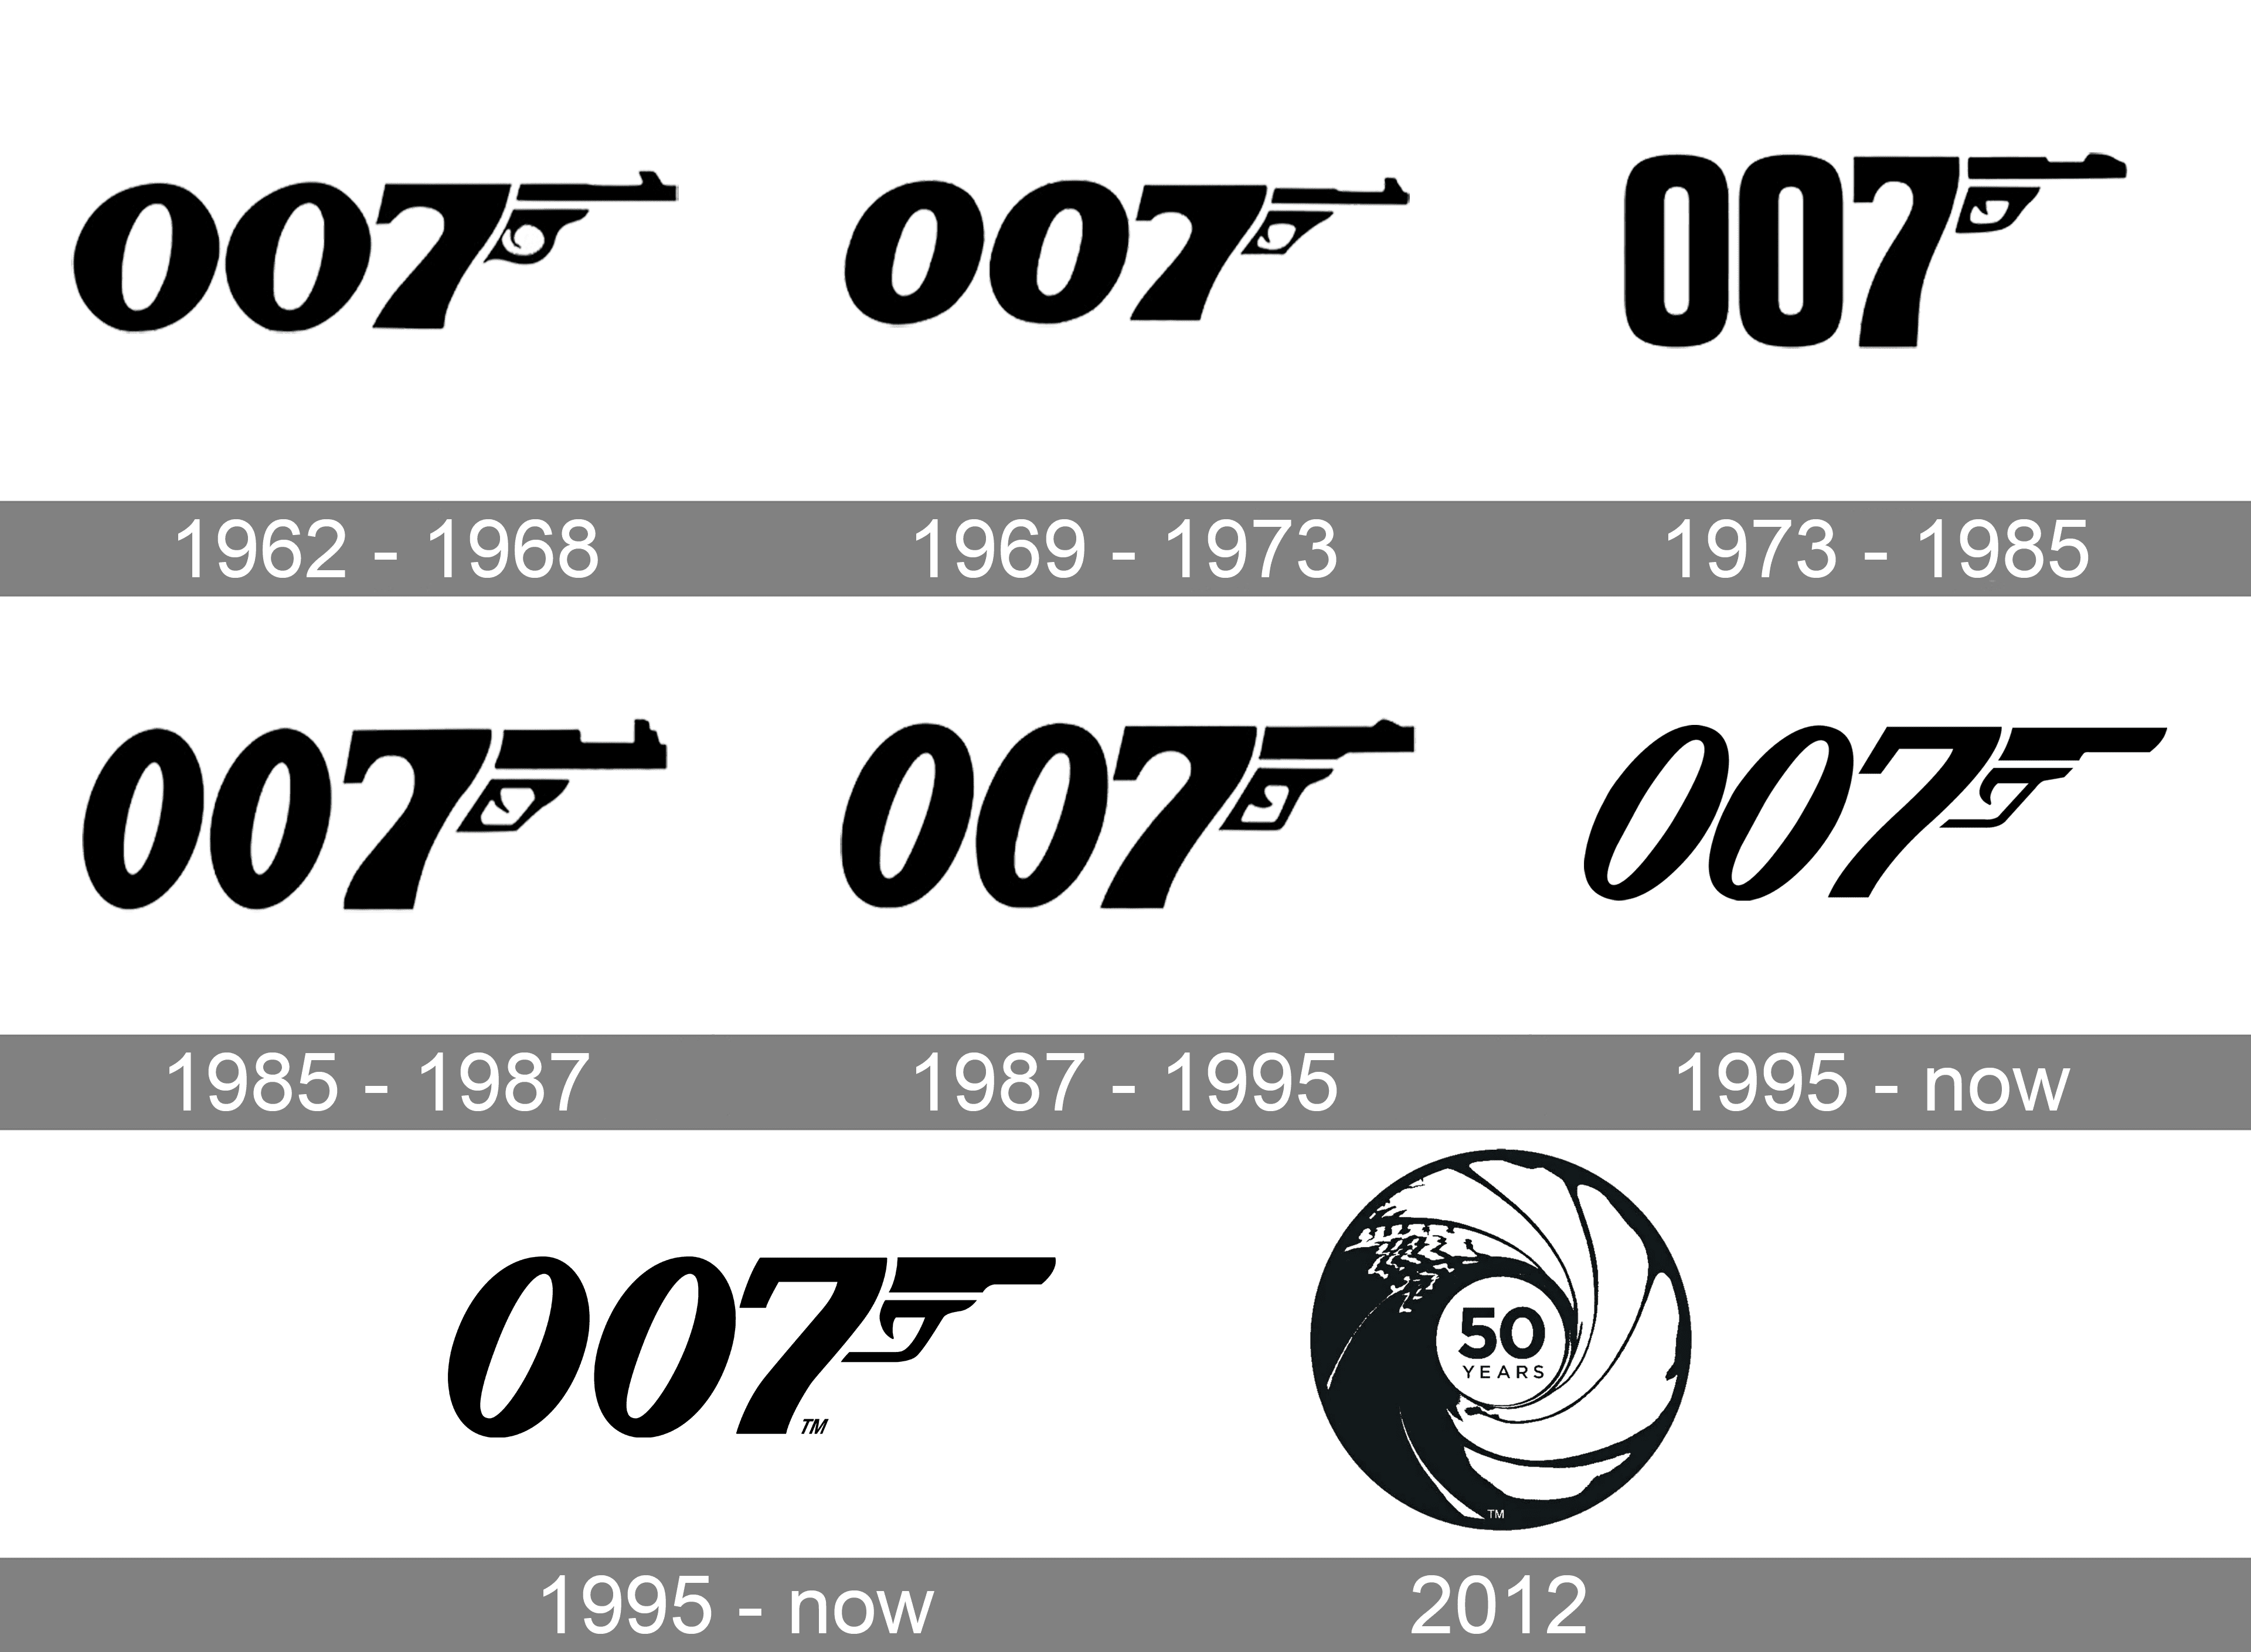 Khám phá ý nghĩa của biểu tượng James Bond, đại diện cho sức mạnh, sự táo bạo và sự kiên trì trong công việc. Từ chiếc lược cắt tóc và suất chảo đánh dấu cho những kỷ niệm đáng nhớ trong các bộ phim Bond, biểu tượng này là một phần thiết yếu của văn hóa pop của thế giới hiện đại.